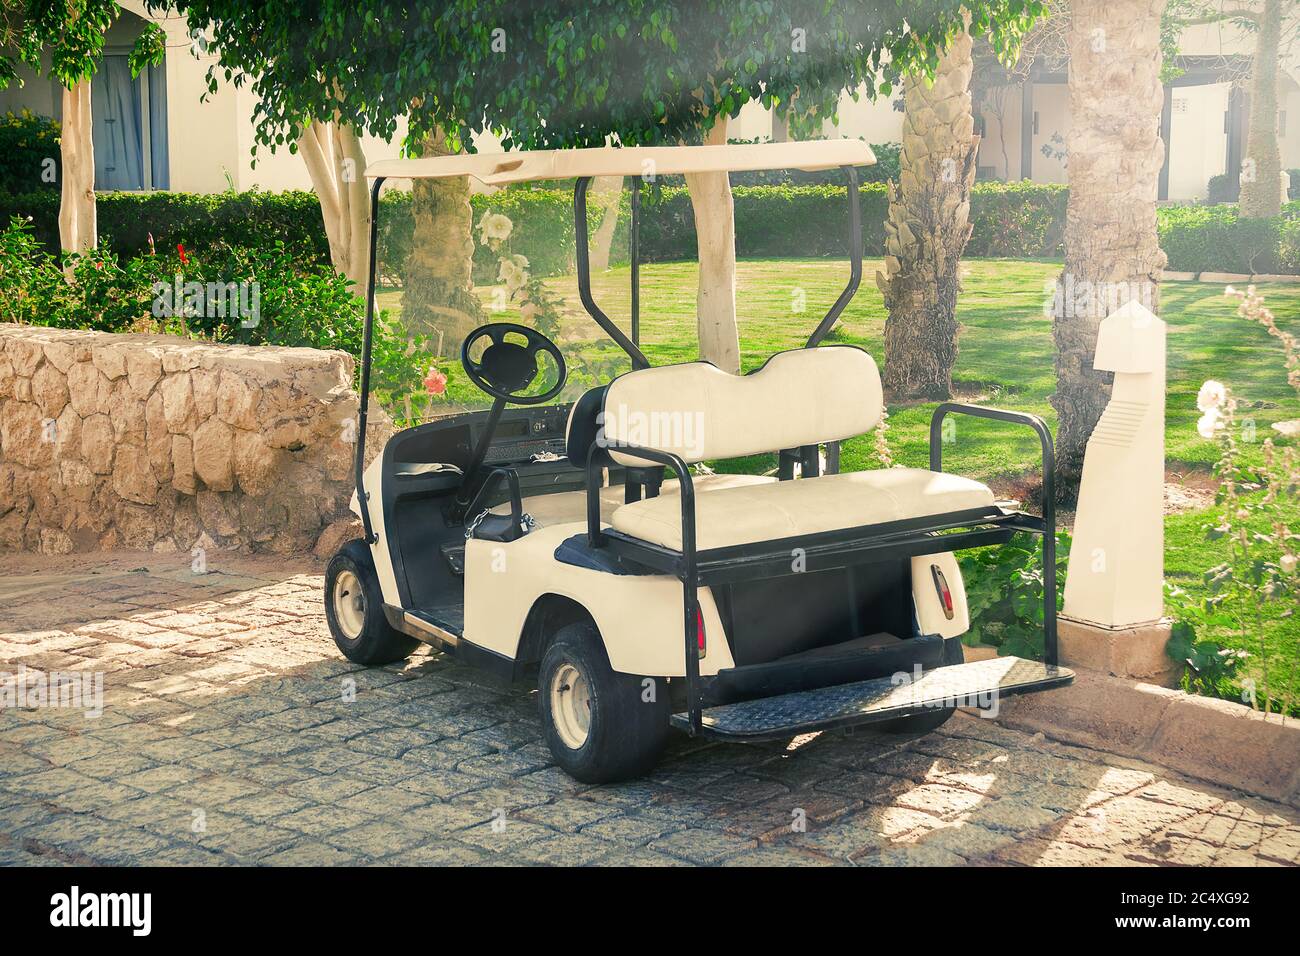 Voiture de voiturette ou voiturette de golf attendant les clients dans l'hôtel Extreme closeup Banque D'Images